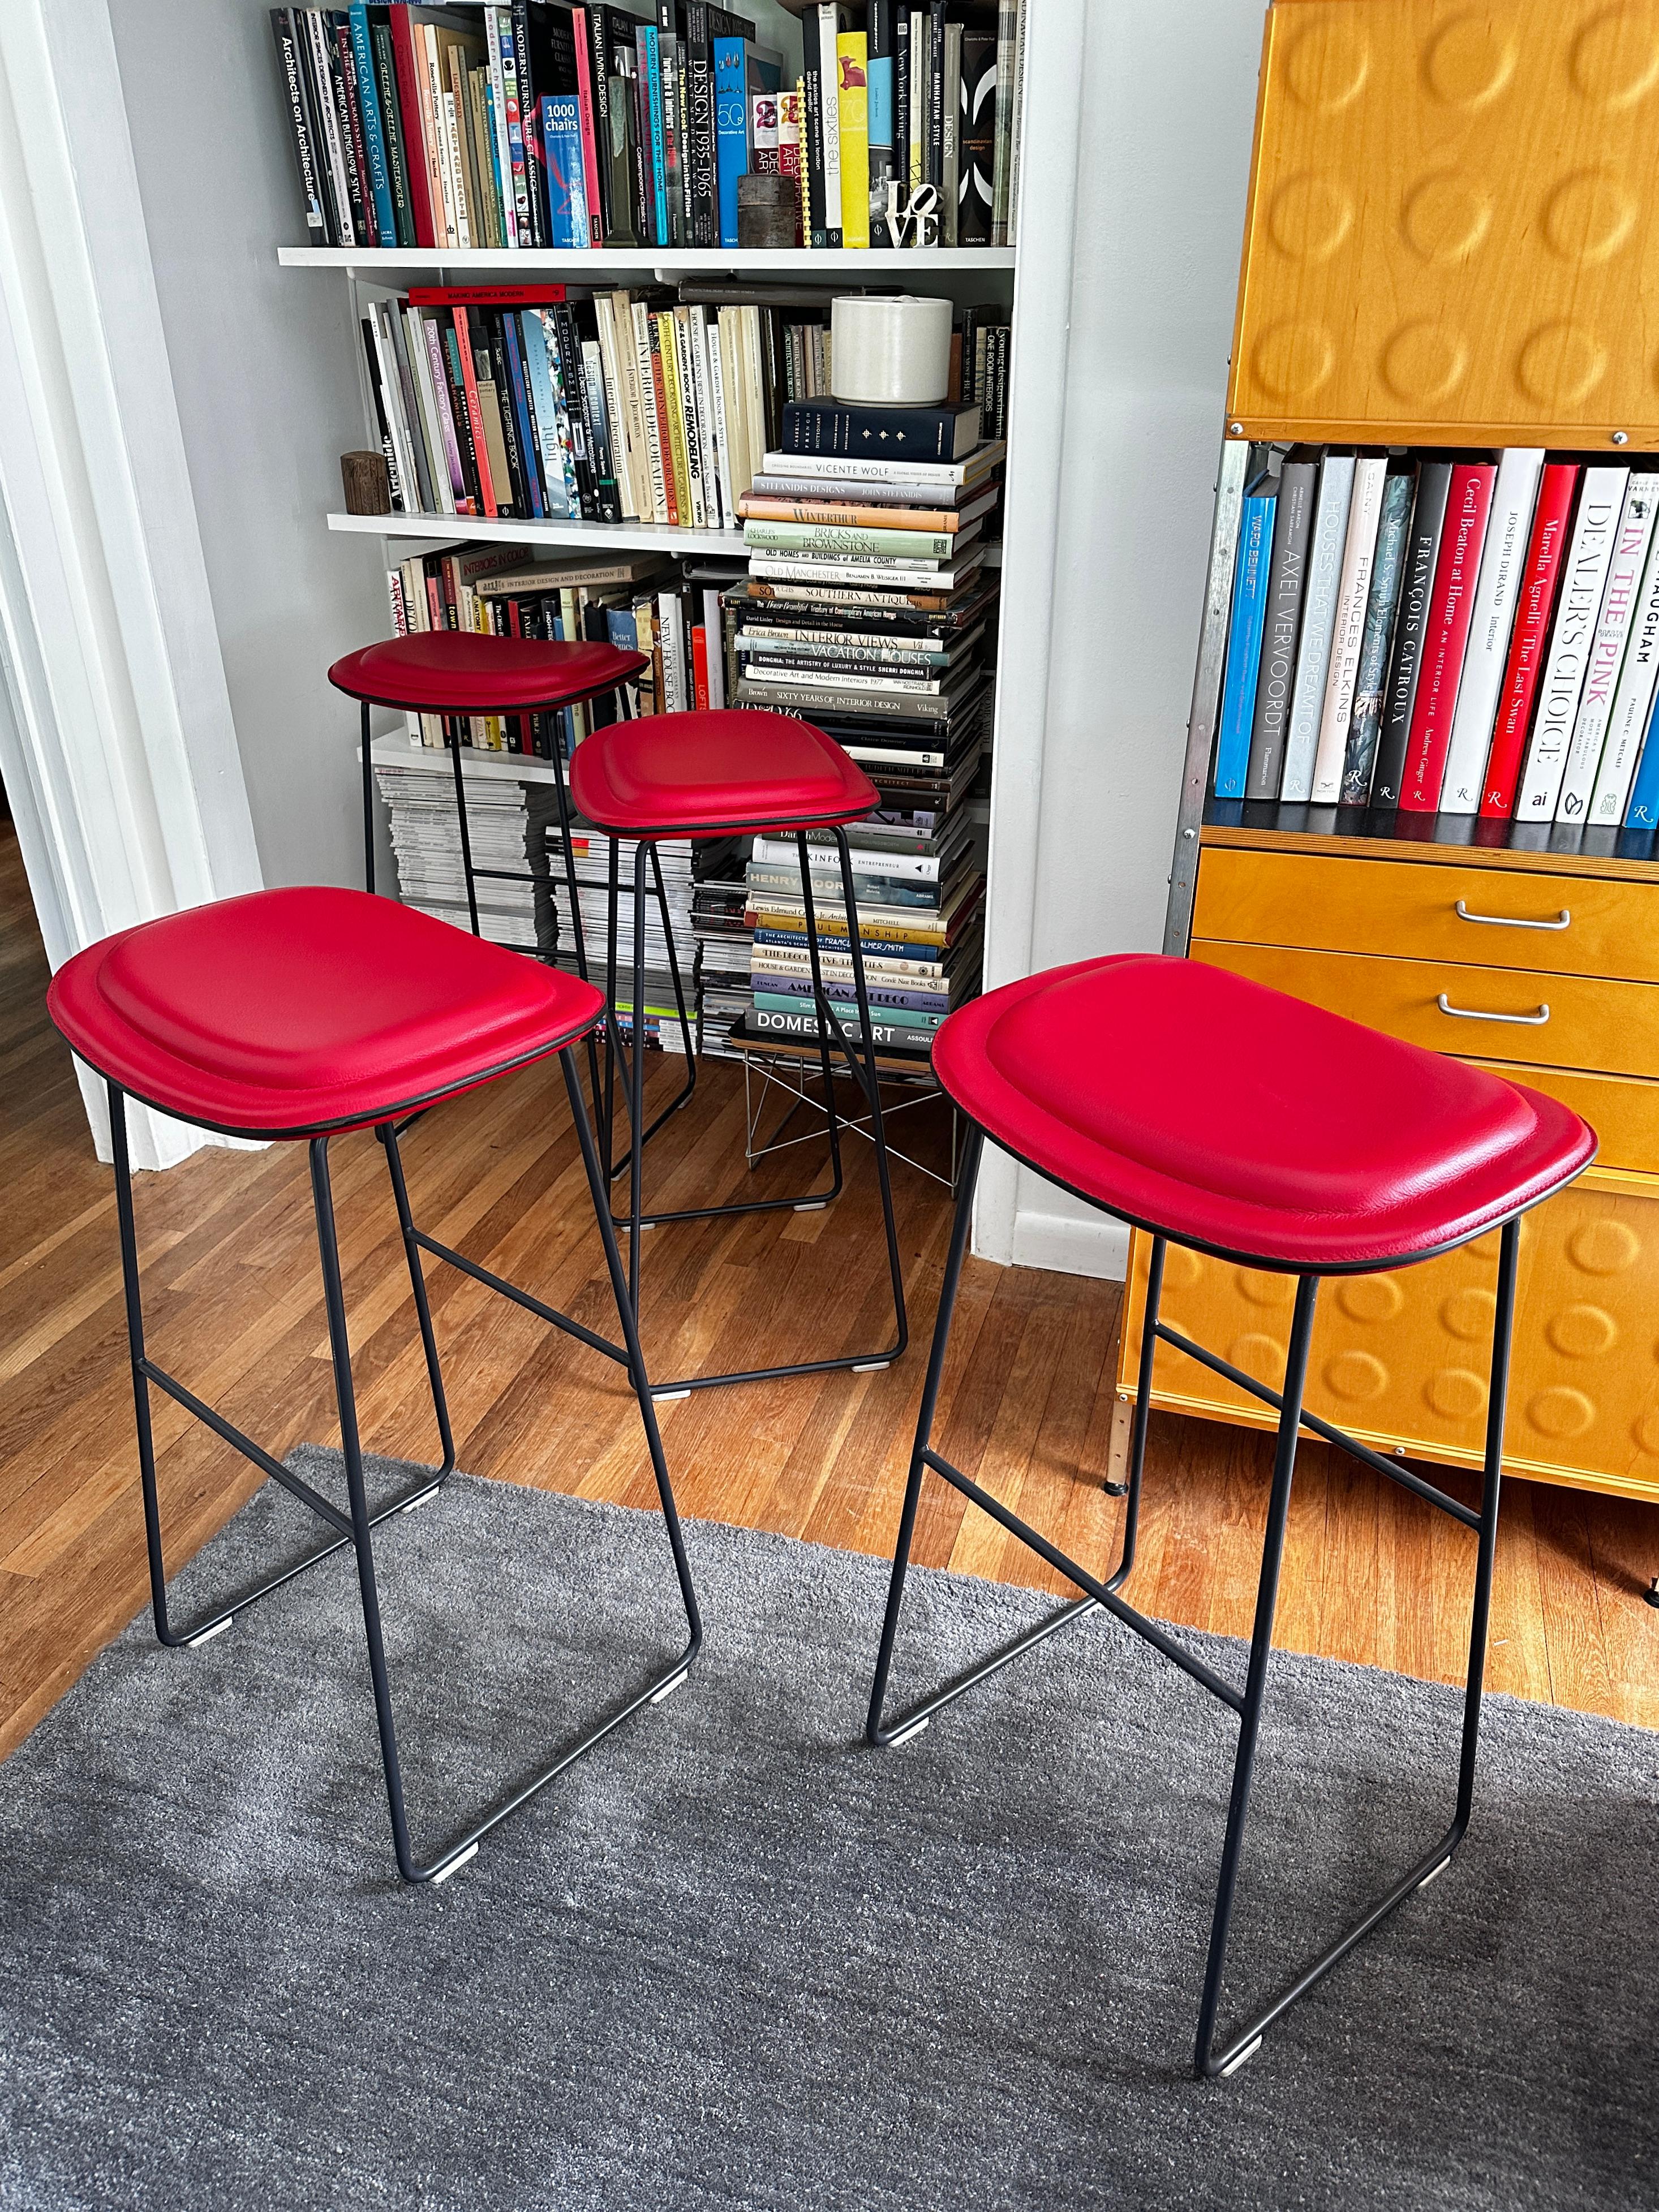 Vier Hi Pad Hocker, entworfen von Jasper Morrison im Jahr 2003 für Cappellini.  Die Sitze sind mit rotem Leder bezogen und haben ein Gestell aus grau lackiertem Edelstahl, das auf vier Polypropylen-Gleitern ruht.  Von den drei verfügbaren Größen